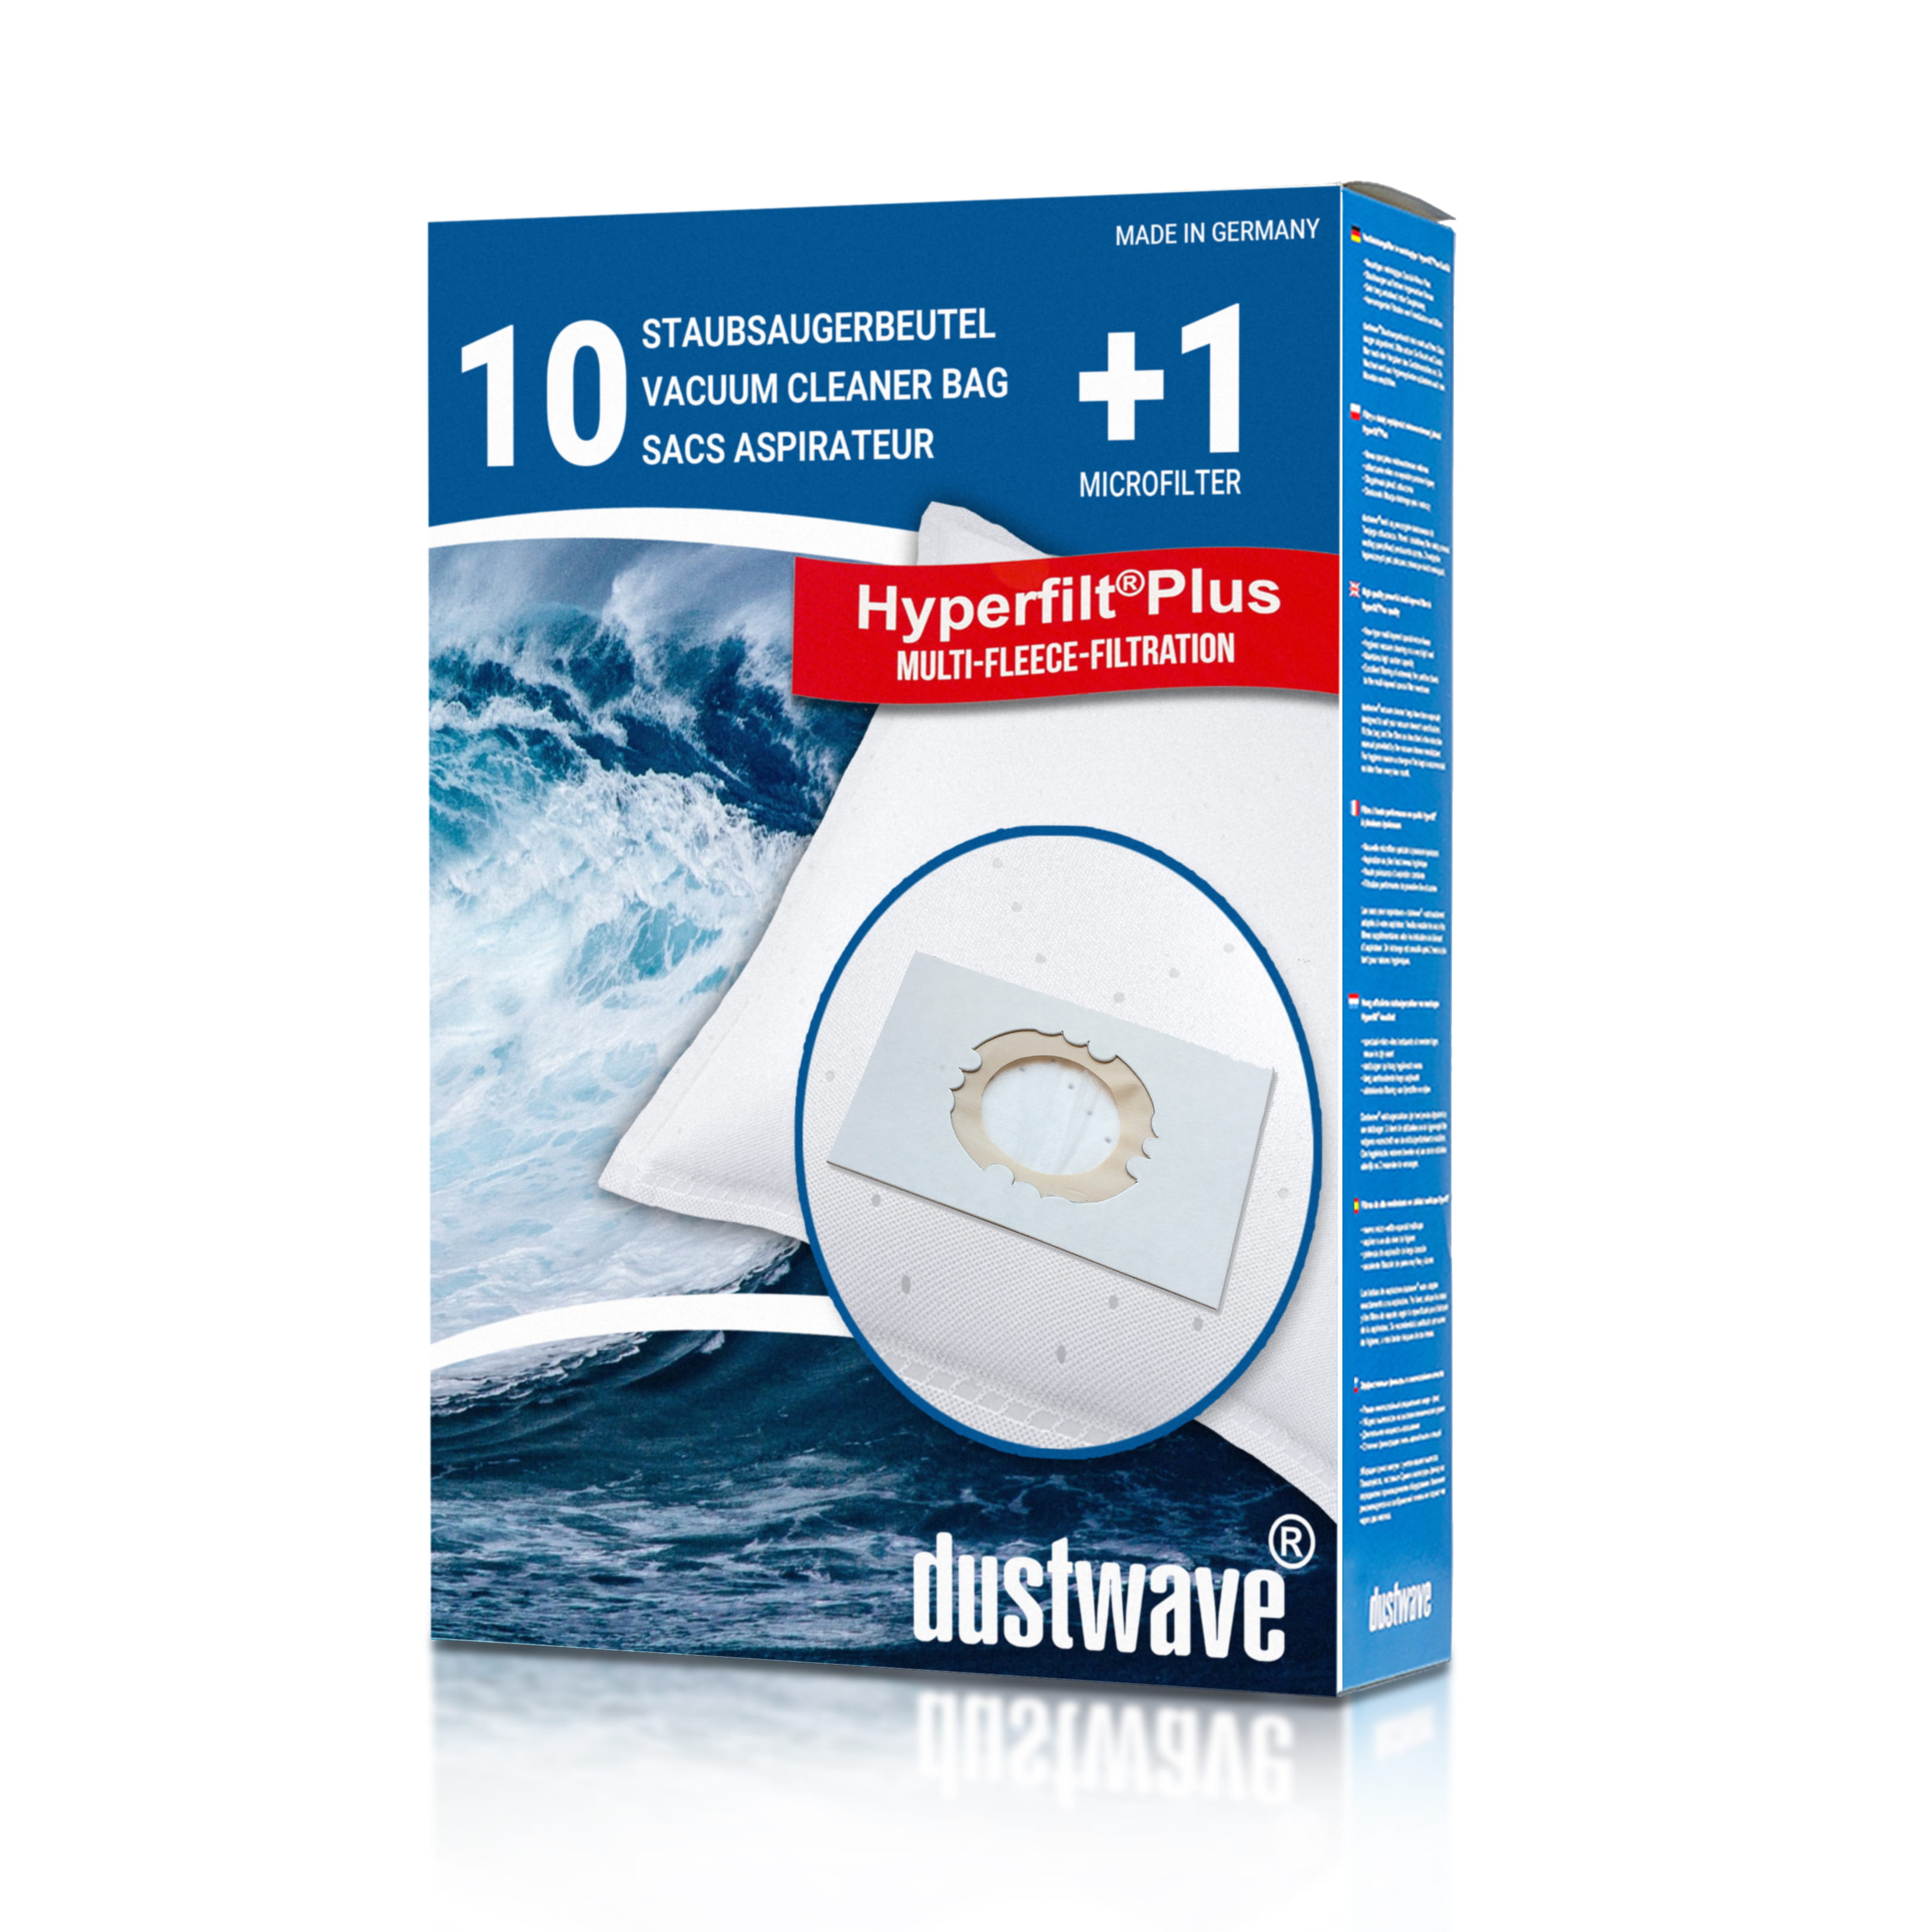 Dustwave® 10 Staubsaugerbeutel für Hoover SCST320E011 - hocheffizient, mehrlagiges Mikrovlies mit Hygieneverschluss - Made in Germany